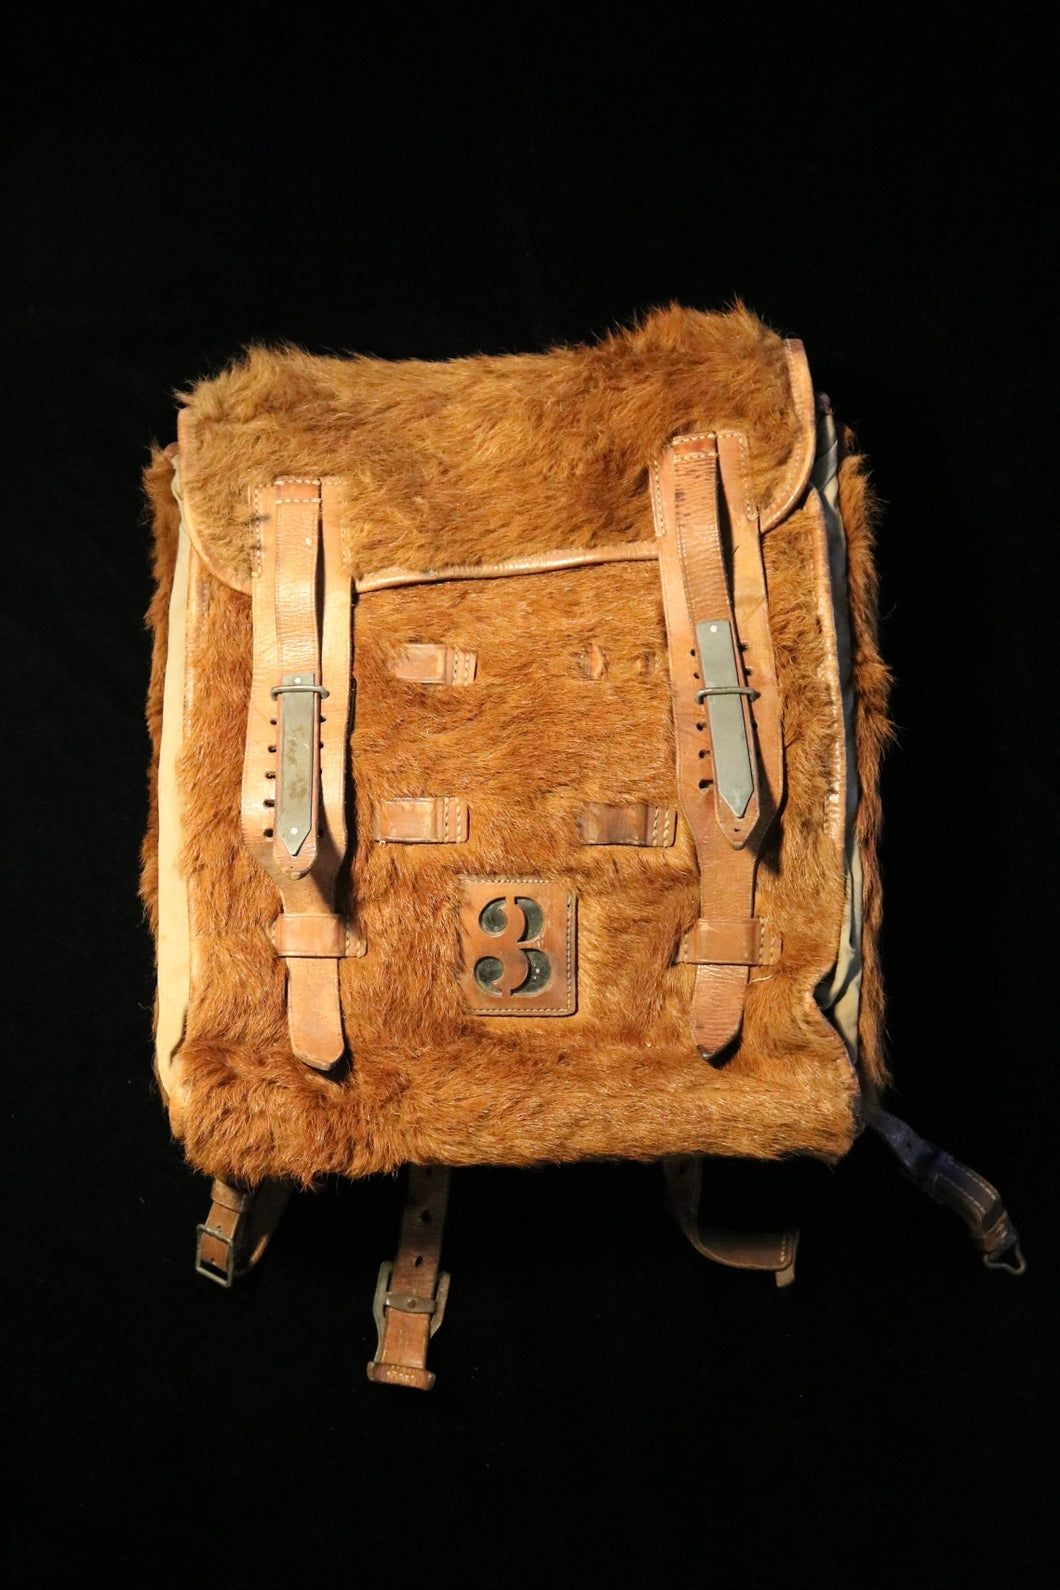 WWII German fur backpack